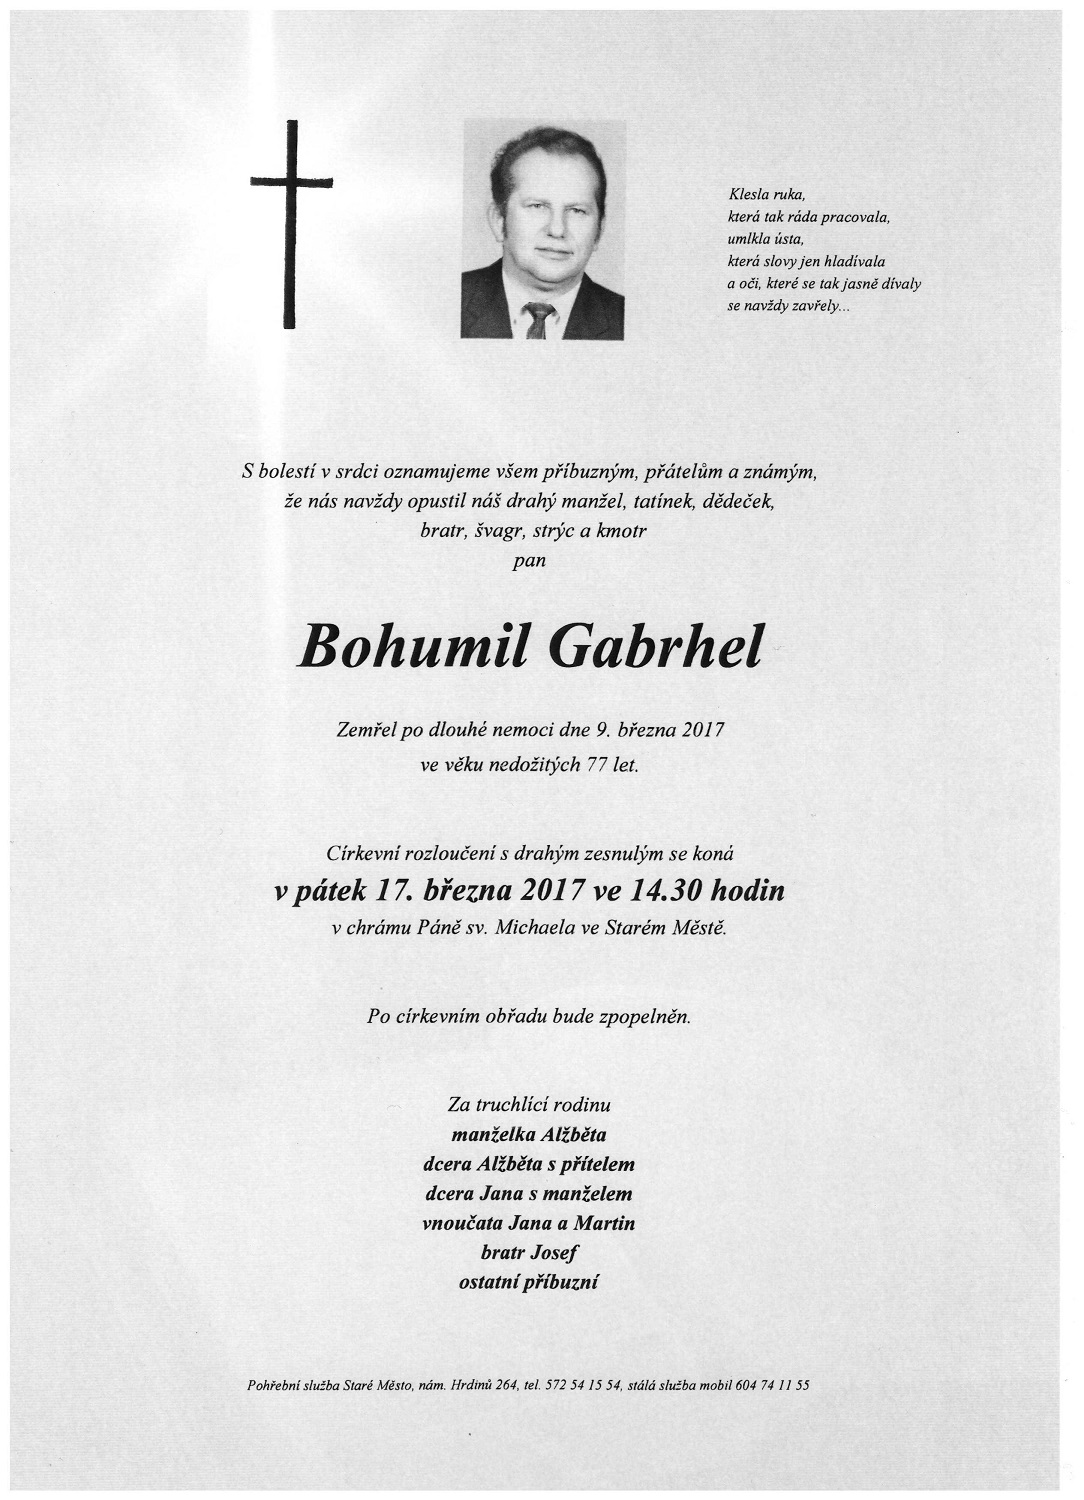 Gabrhel Bohumil parte 090317